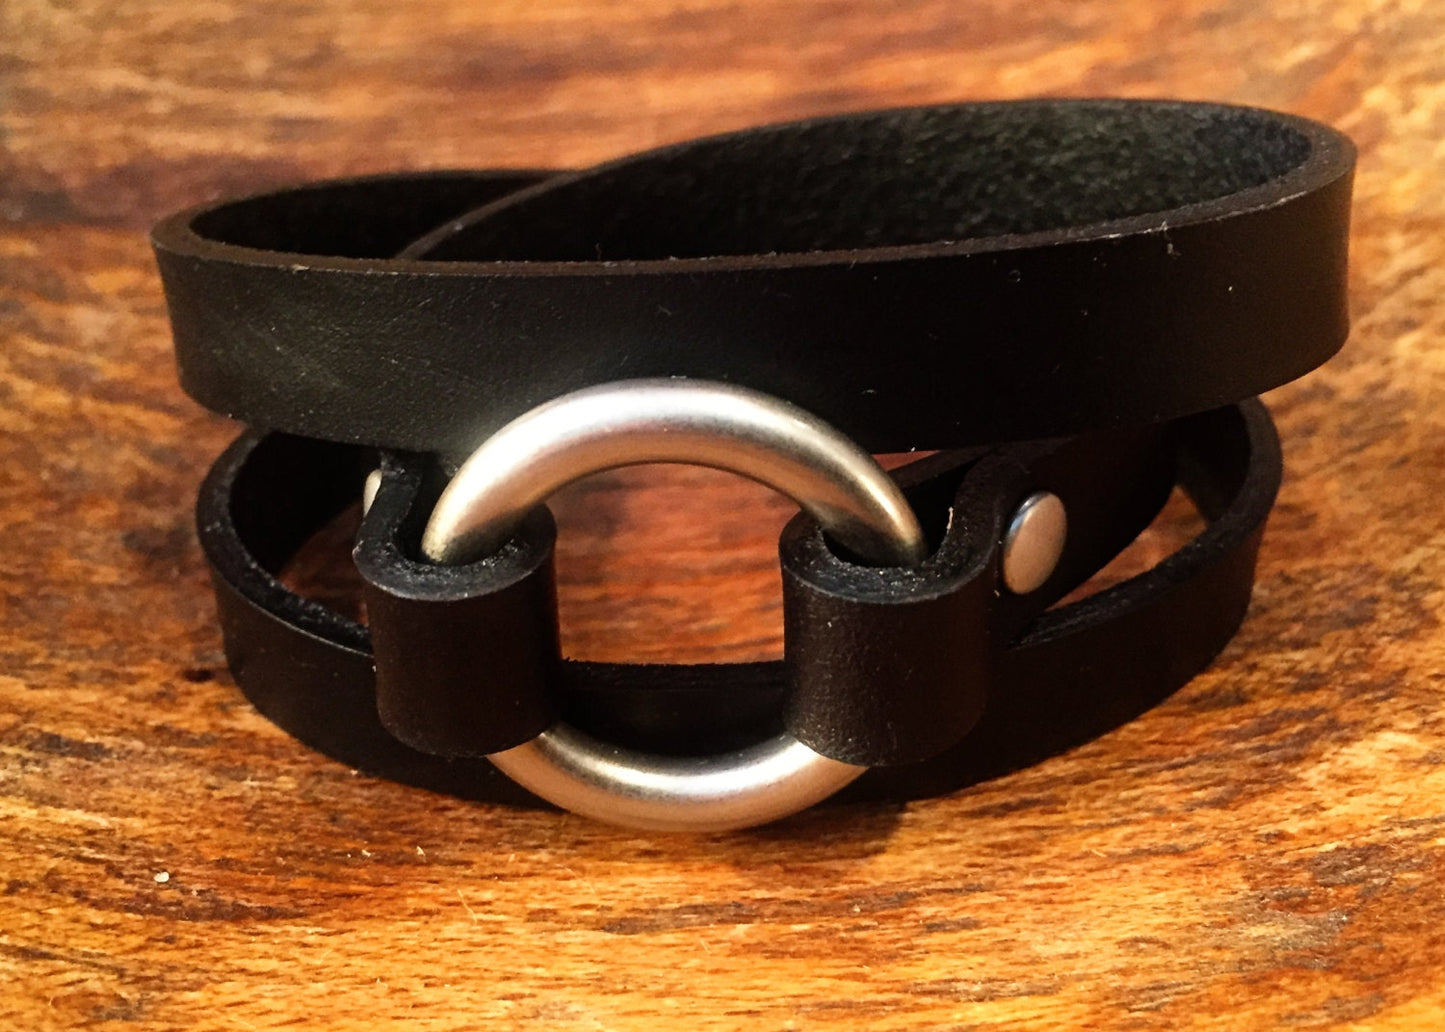 Petite Leather Wrap Bracelet